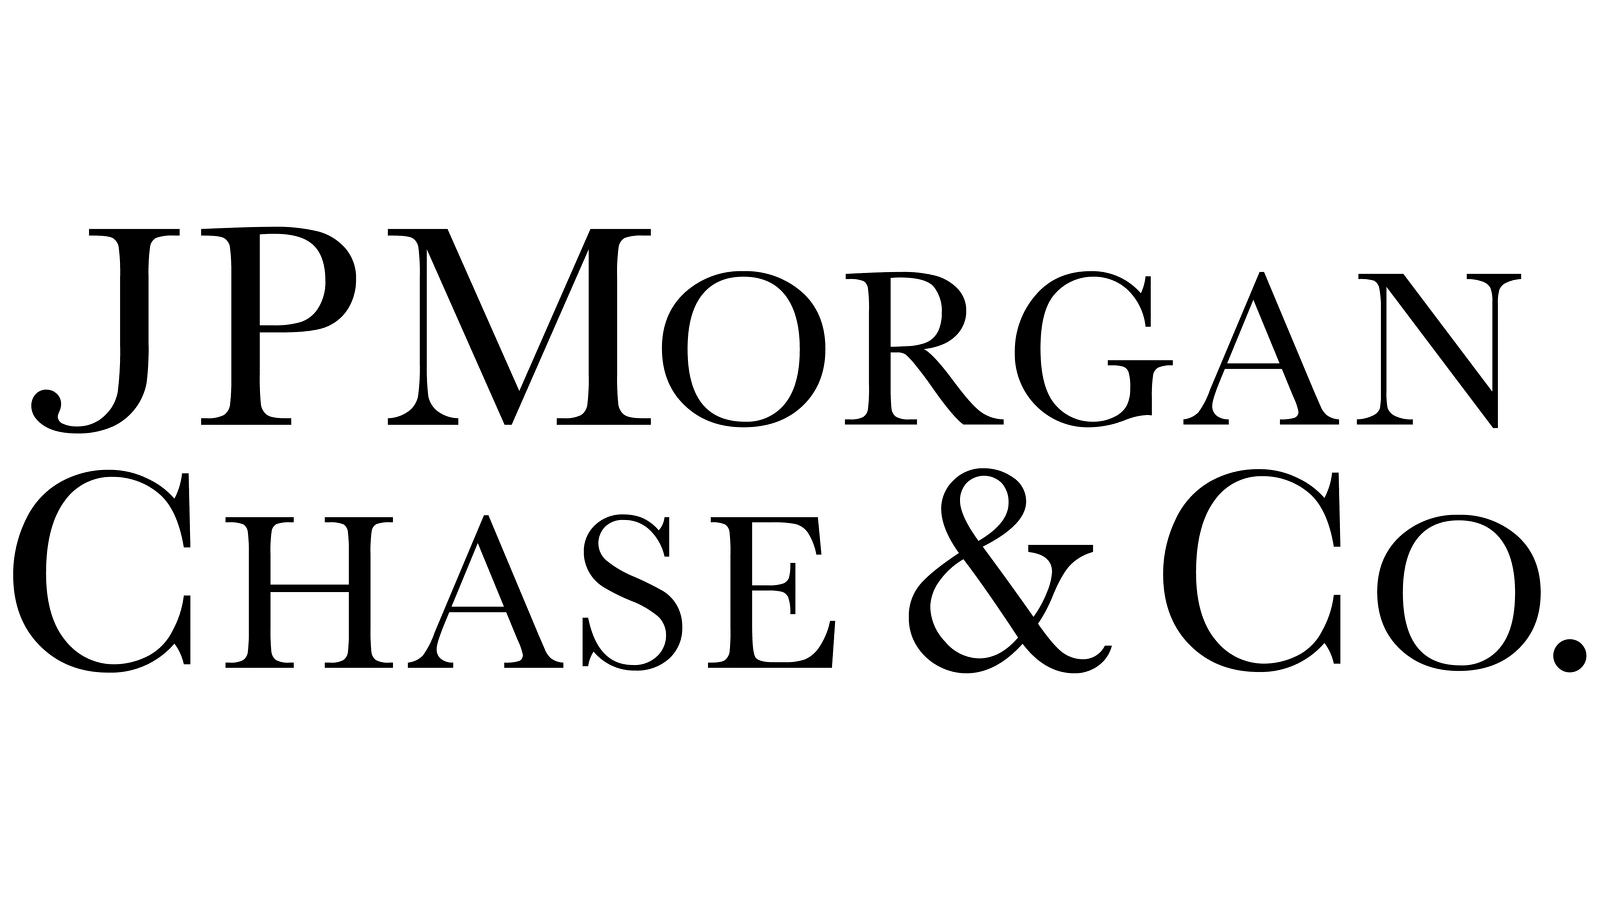  2022/02/JP-Morgan-Chase-Logo-1.png 